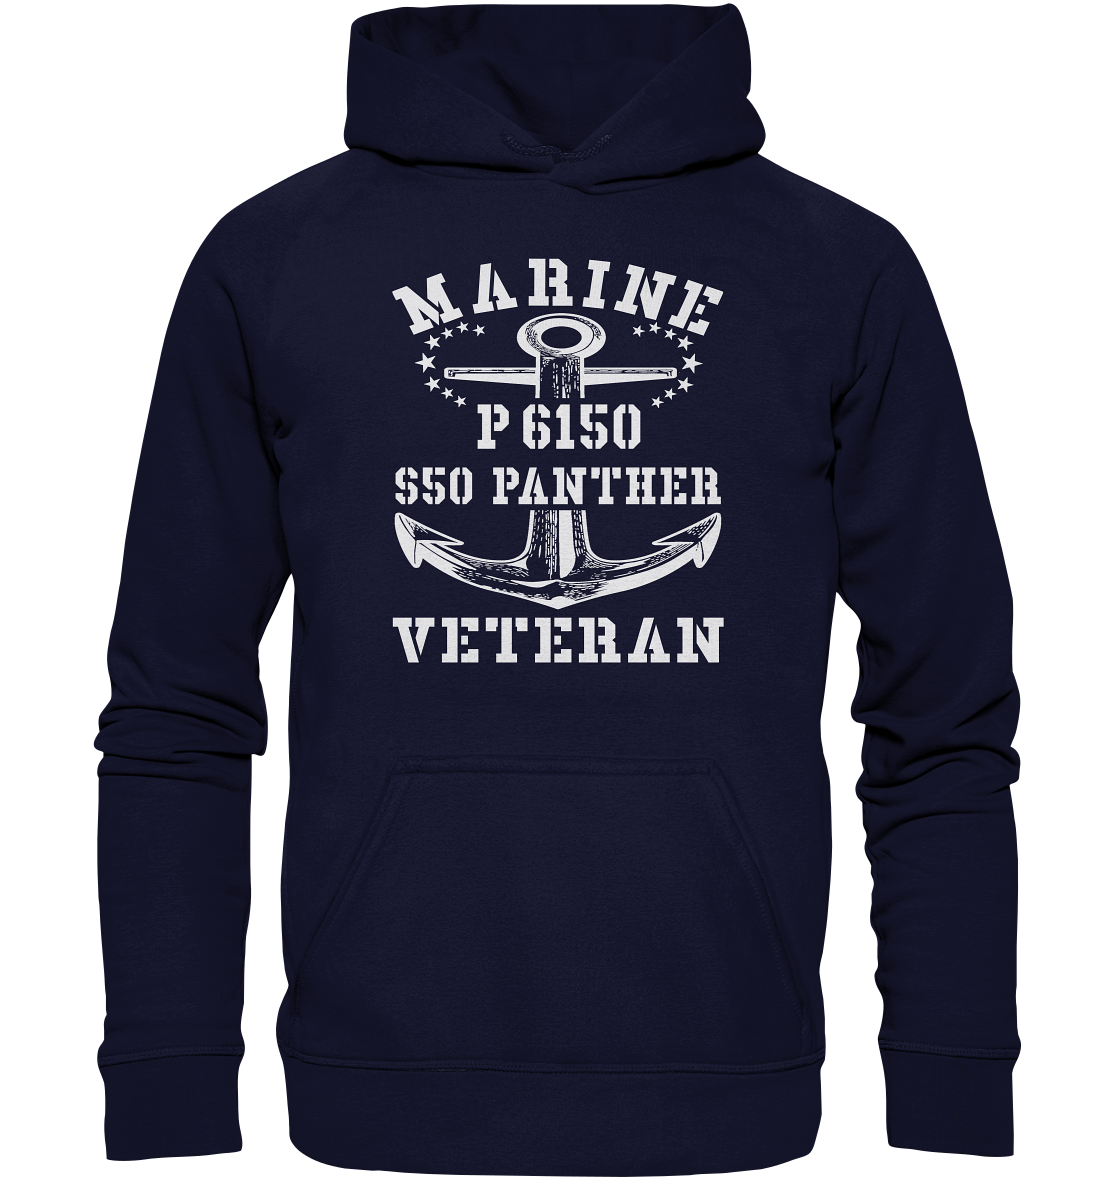 P6150 S50 PANTHER Marine Veteran - Basic Unisex Hoodie XL